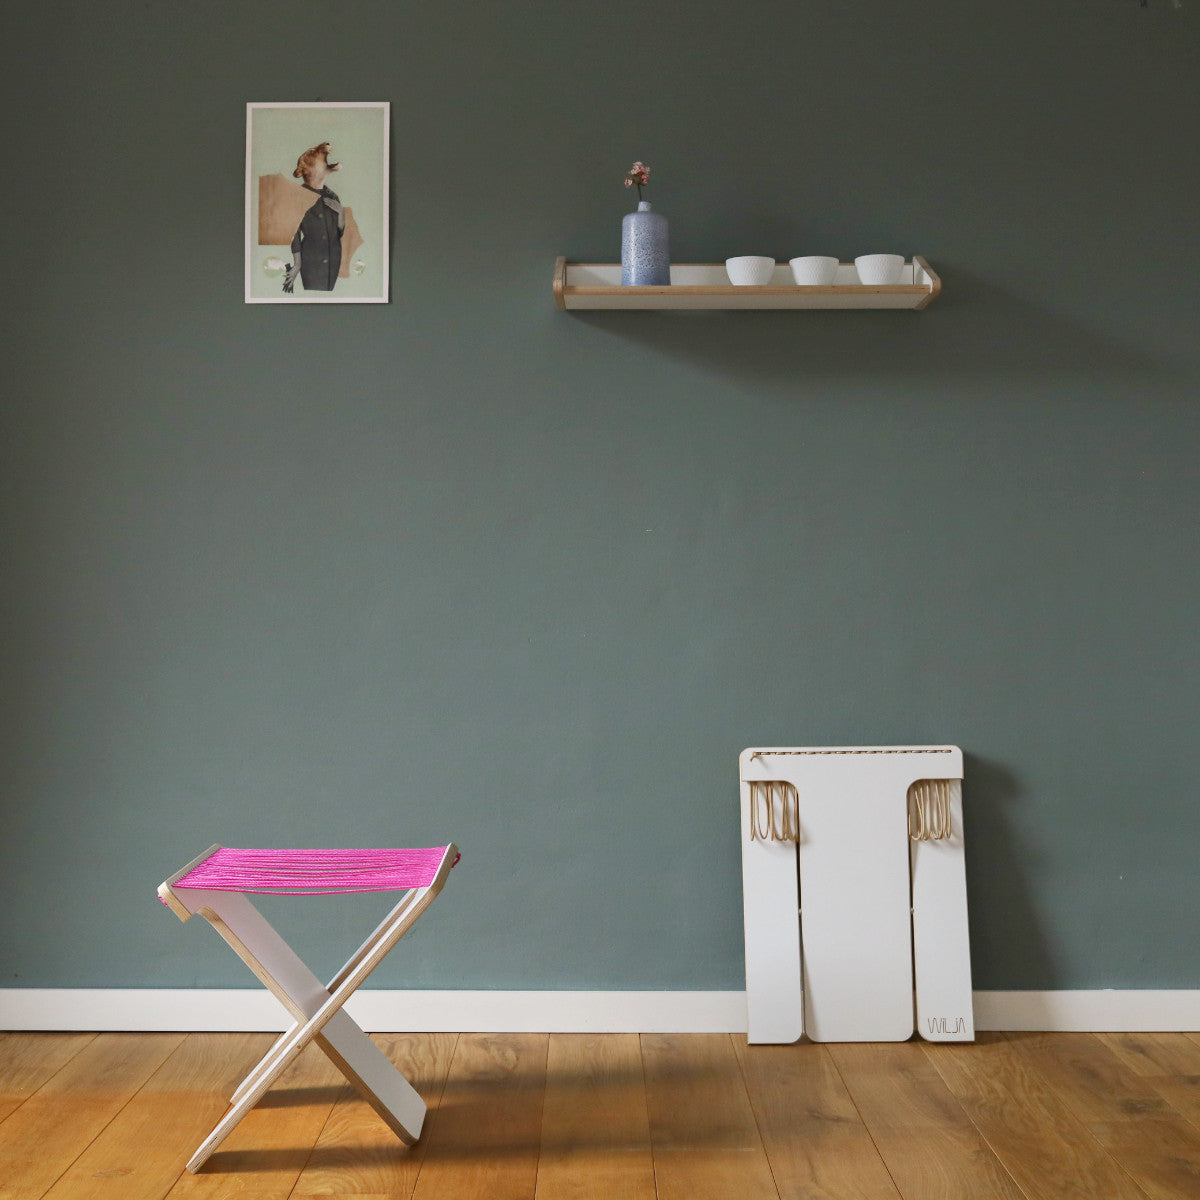 WILJA Klapphocker Karl faltbar aus Holz mit Seil in pink im Zimmer mobiles Sitzmöbel von vorne